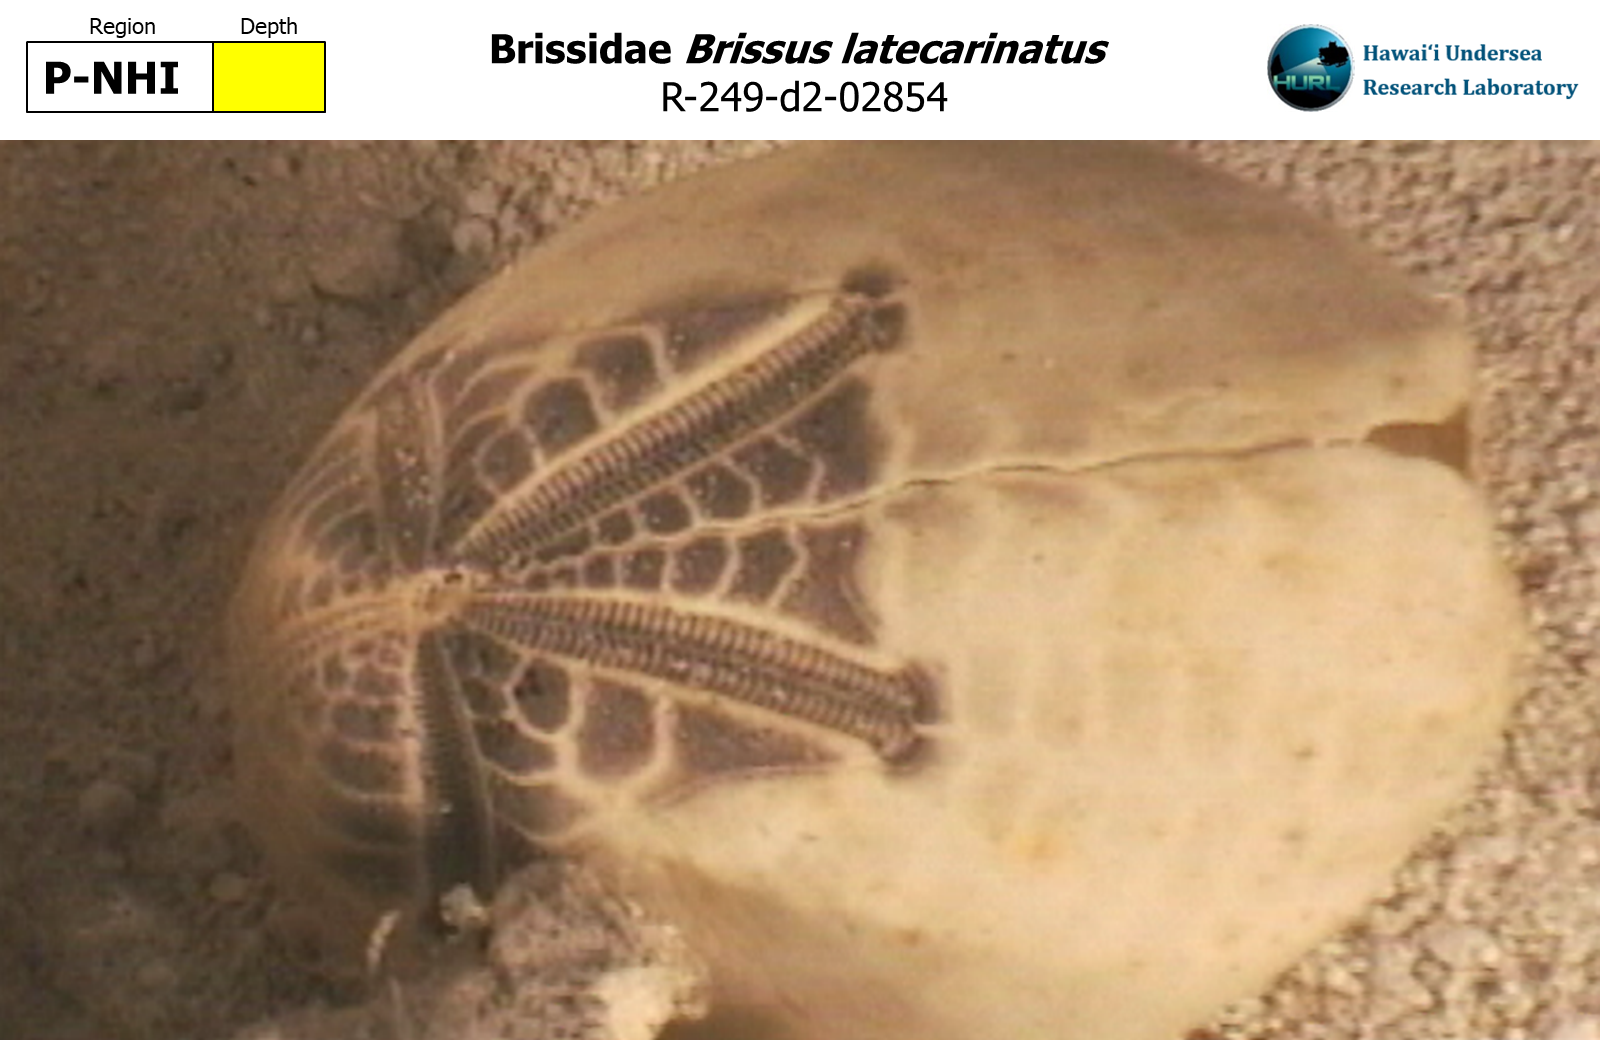 Brissus latecarinatus